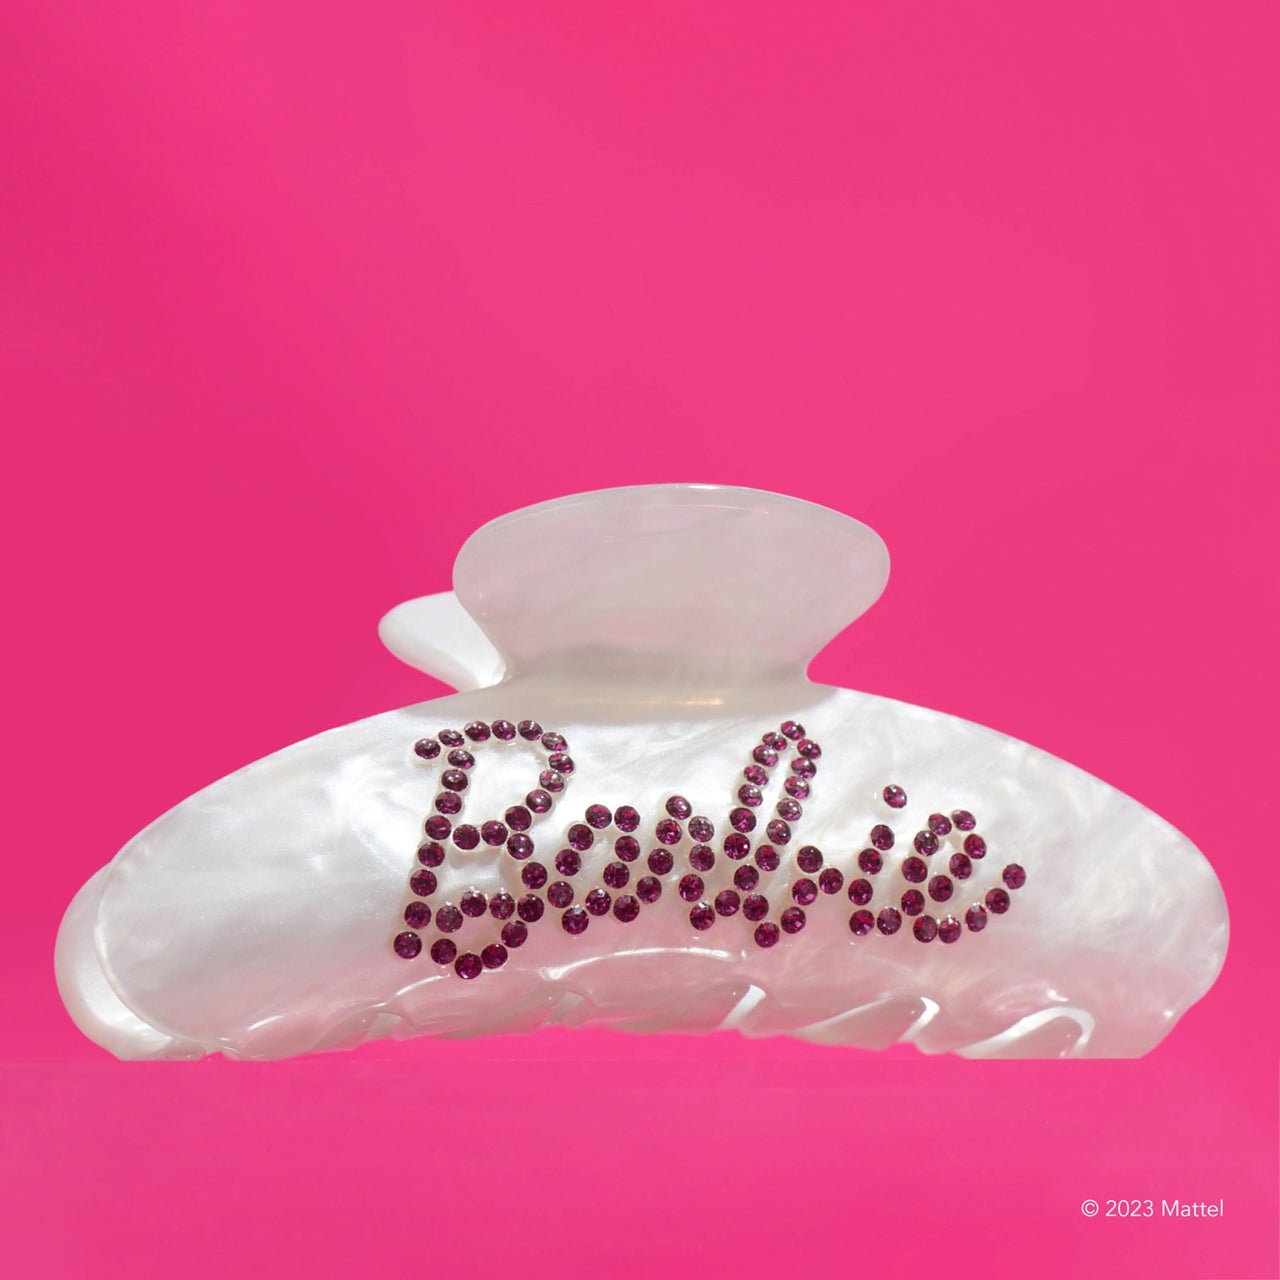 Barbie™ x Kitsch Sammlerpaket